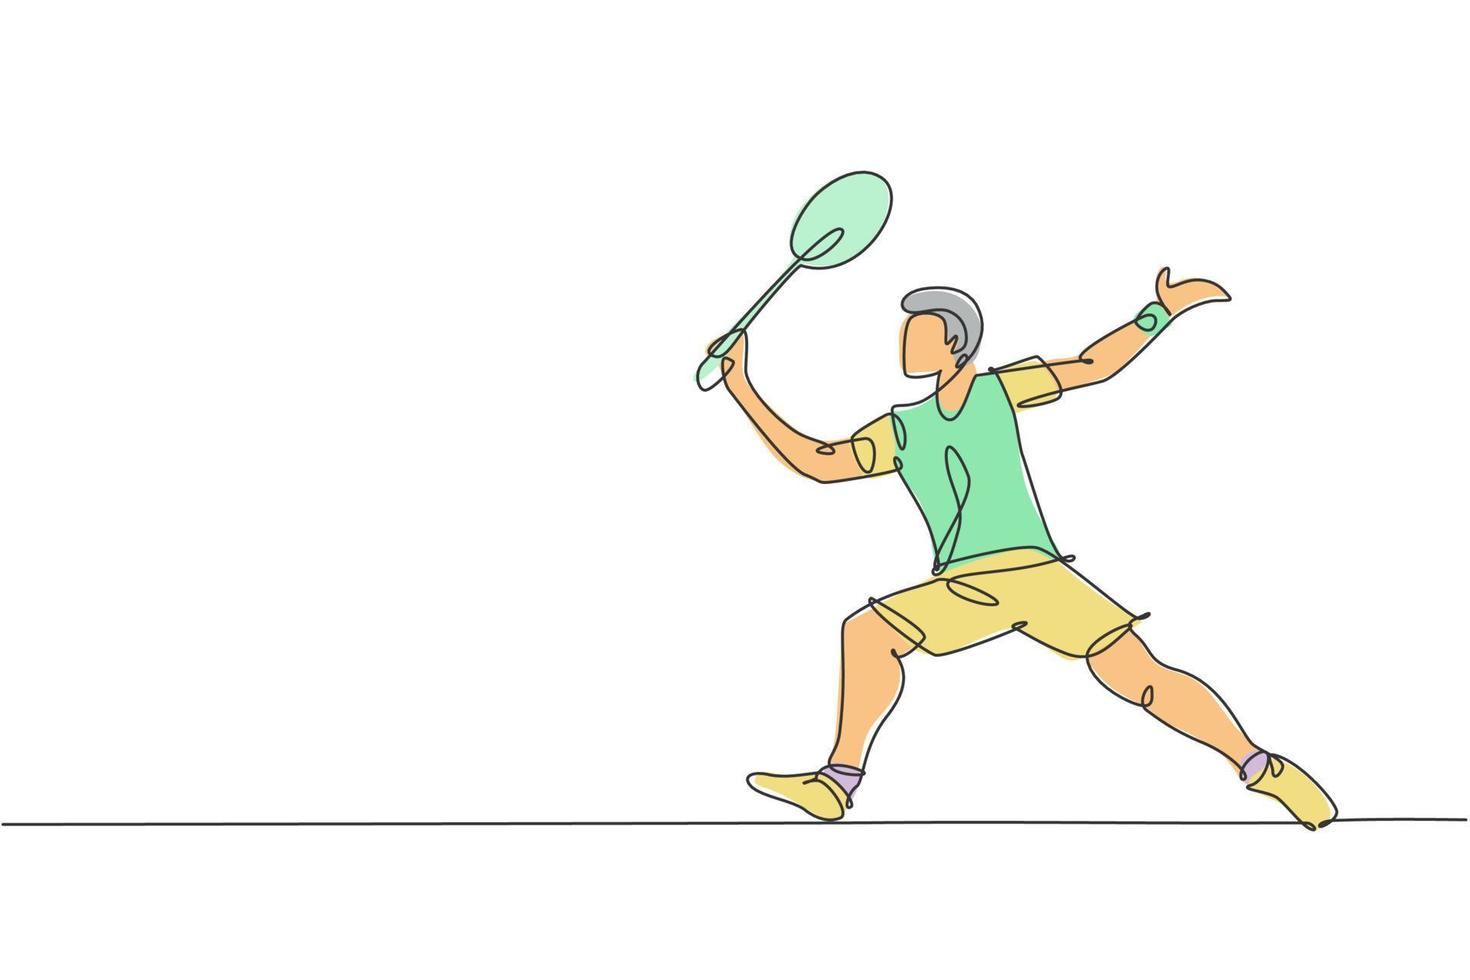 un disegno a linea singola giovane energico giocatore di badminton prende un colpo dall'illustrazione grafica vettoriale dell'avversario. concetto di sport sano. moderno disegno a linea continua per poster di tornei di badminton